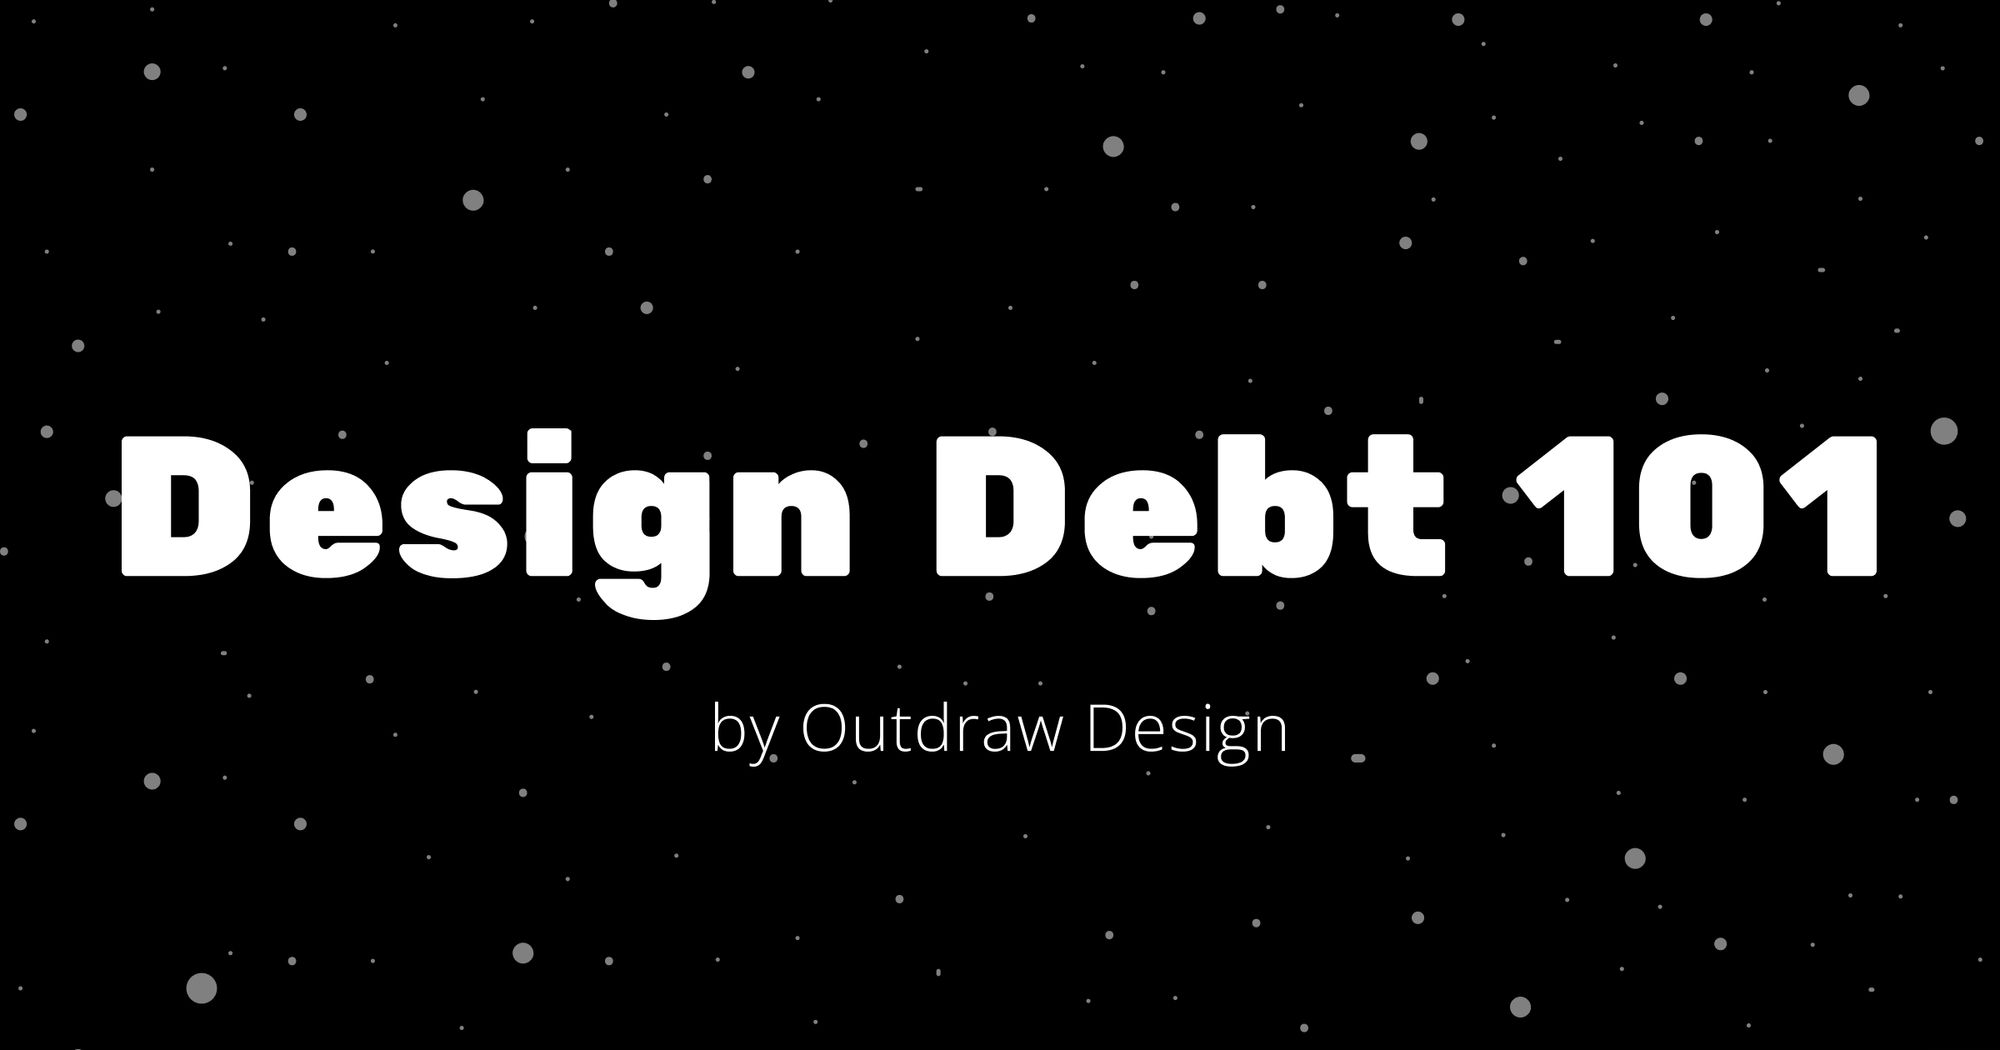 Design Debt 101 - by Outdraw Design